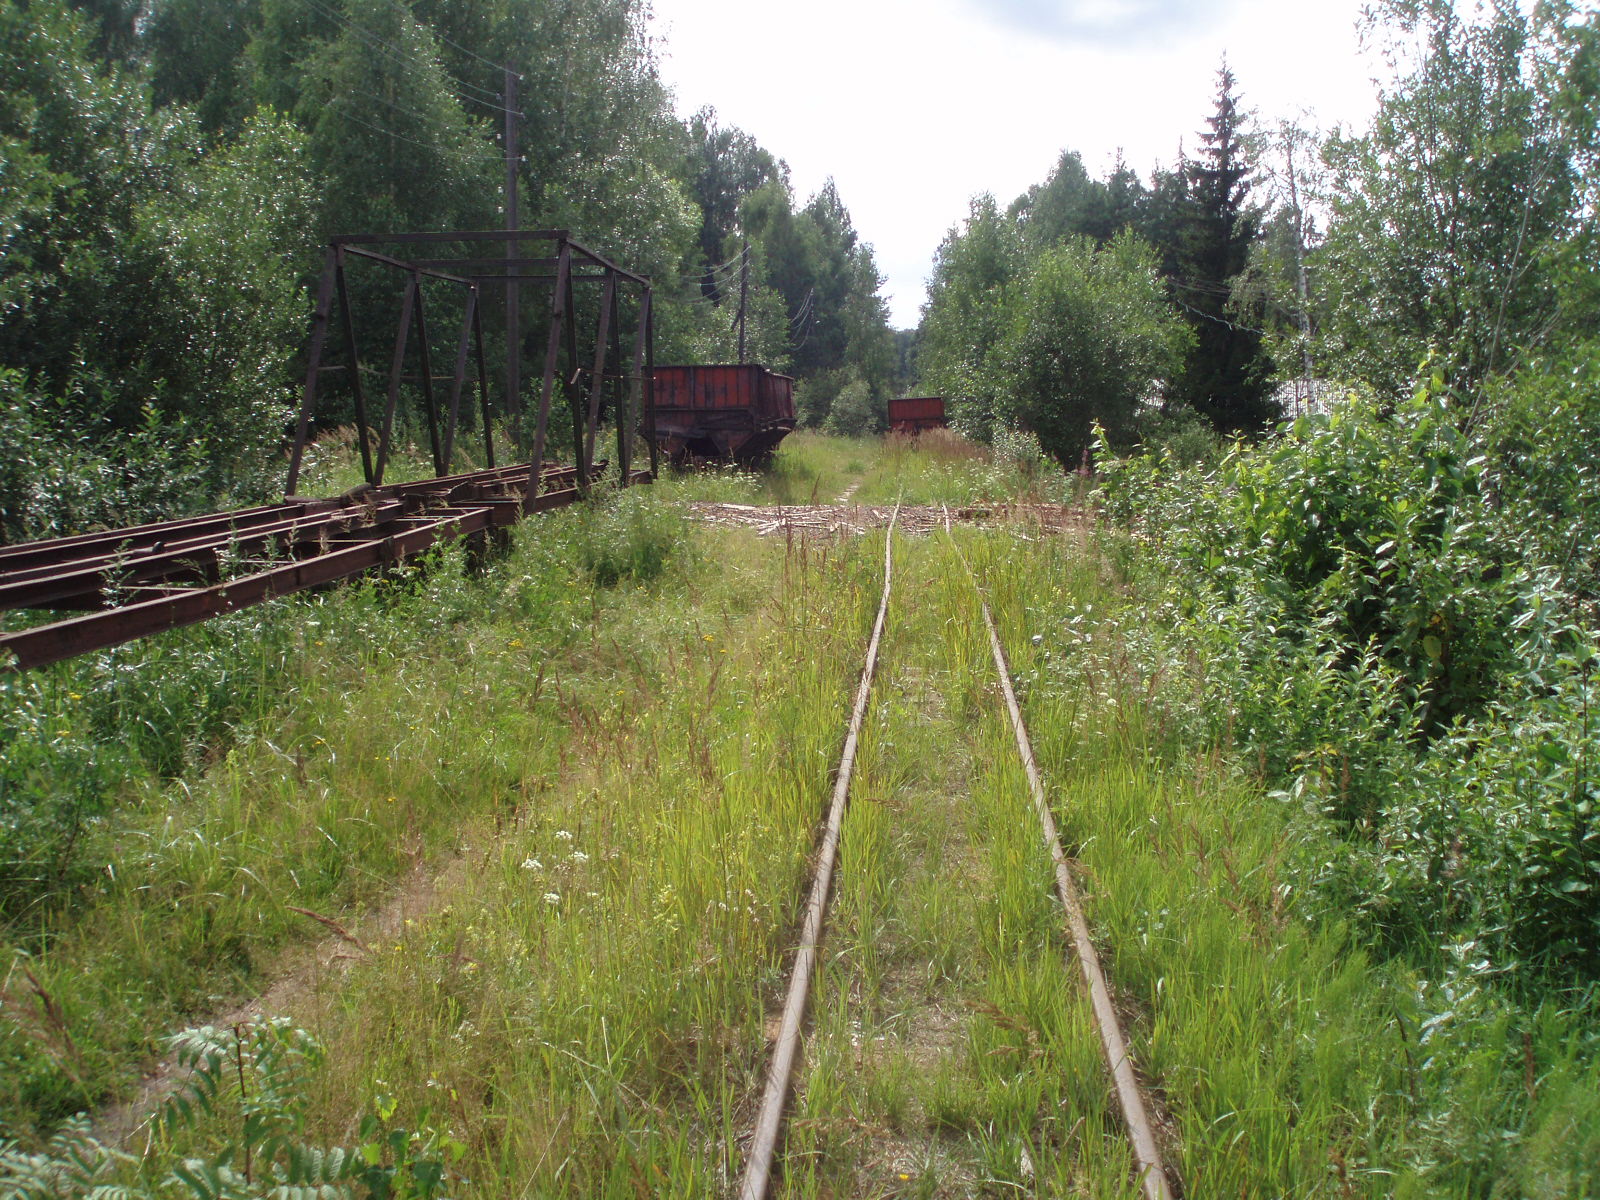 Узкоколейная железная дорога Отворского торфопредприятия  —  фотографии, сделанные в 2007 году (часть 5)